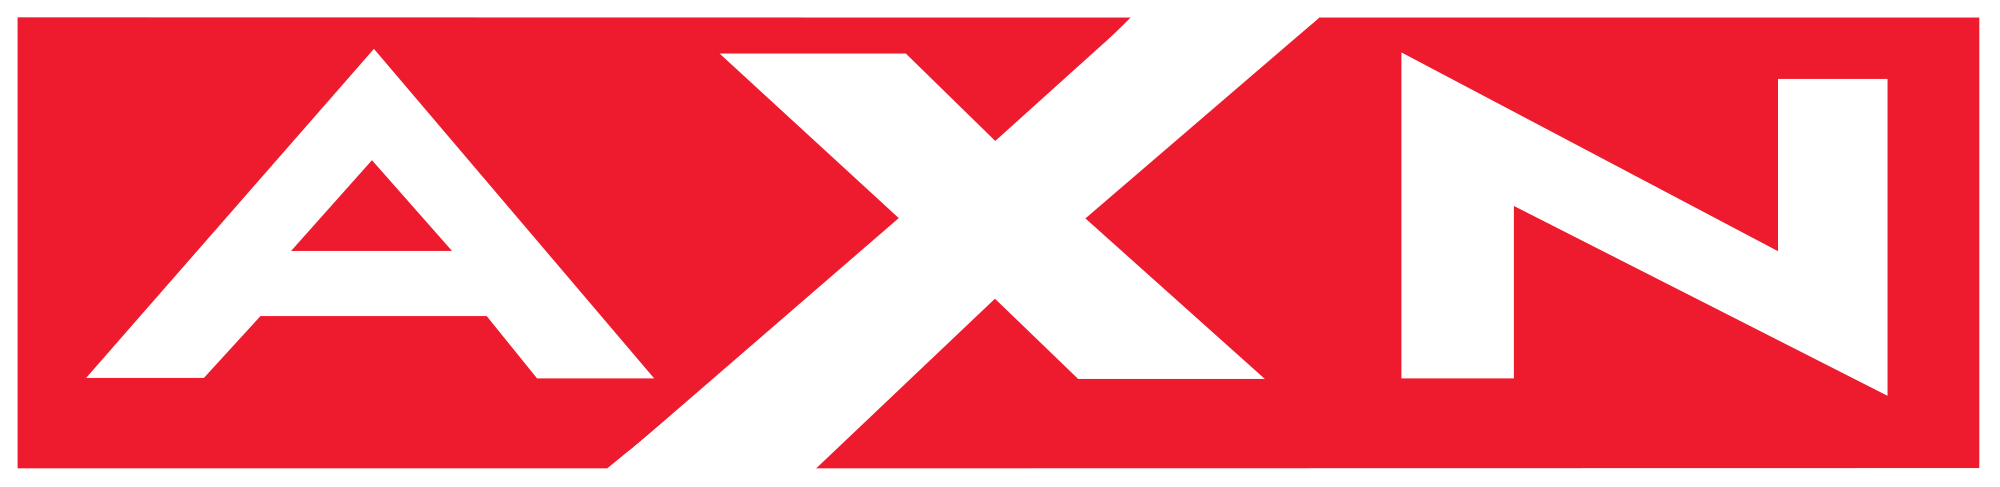 Axn Logo Vector PNG - 112956